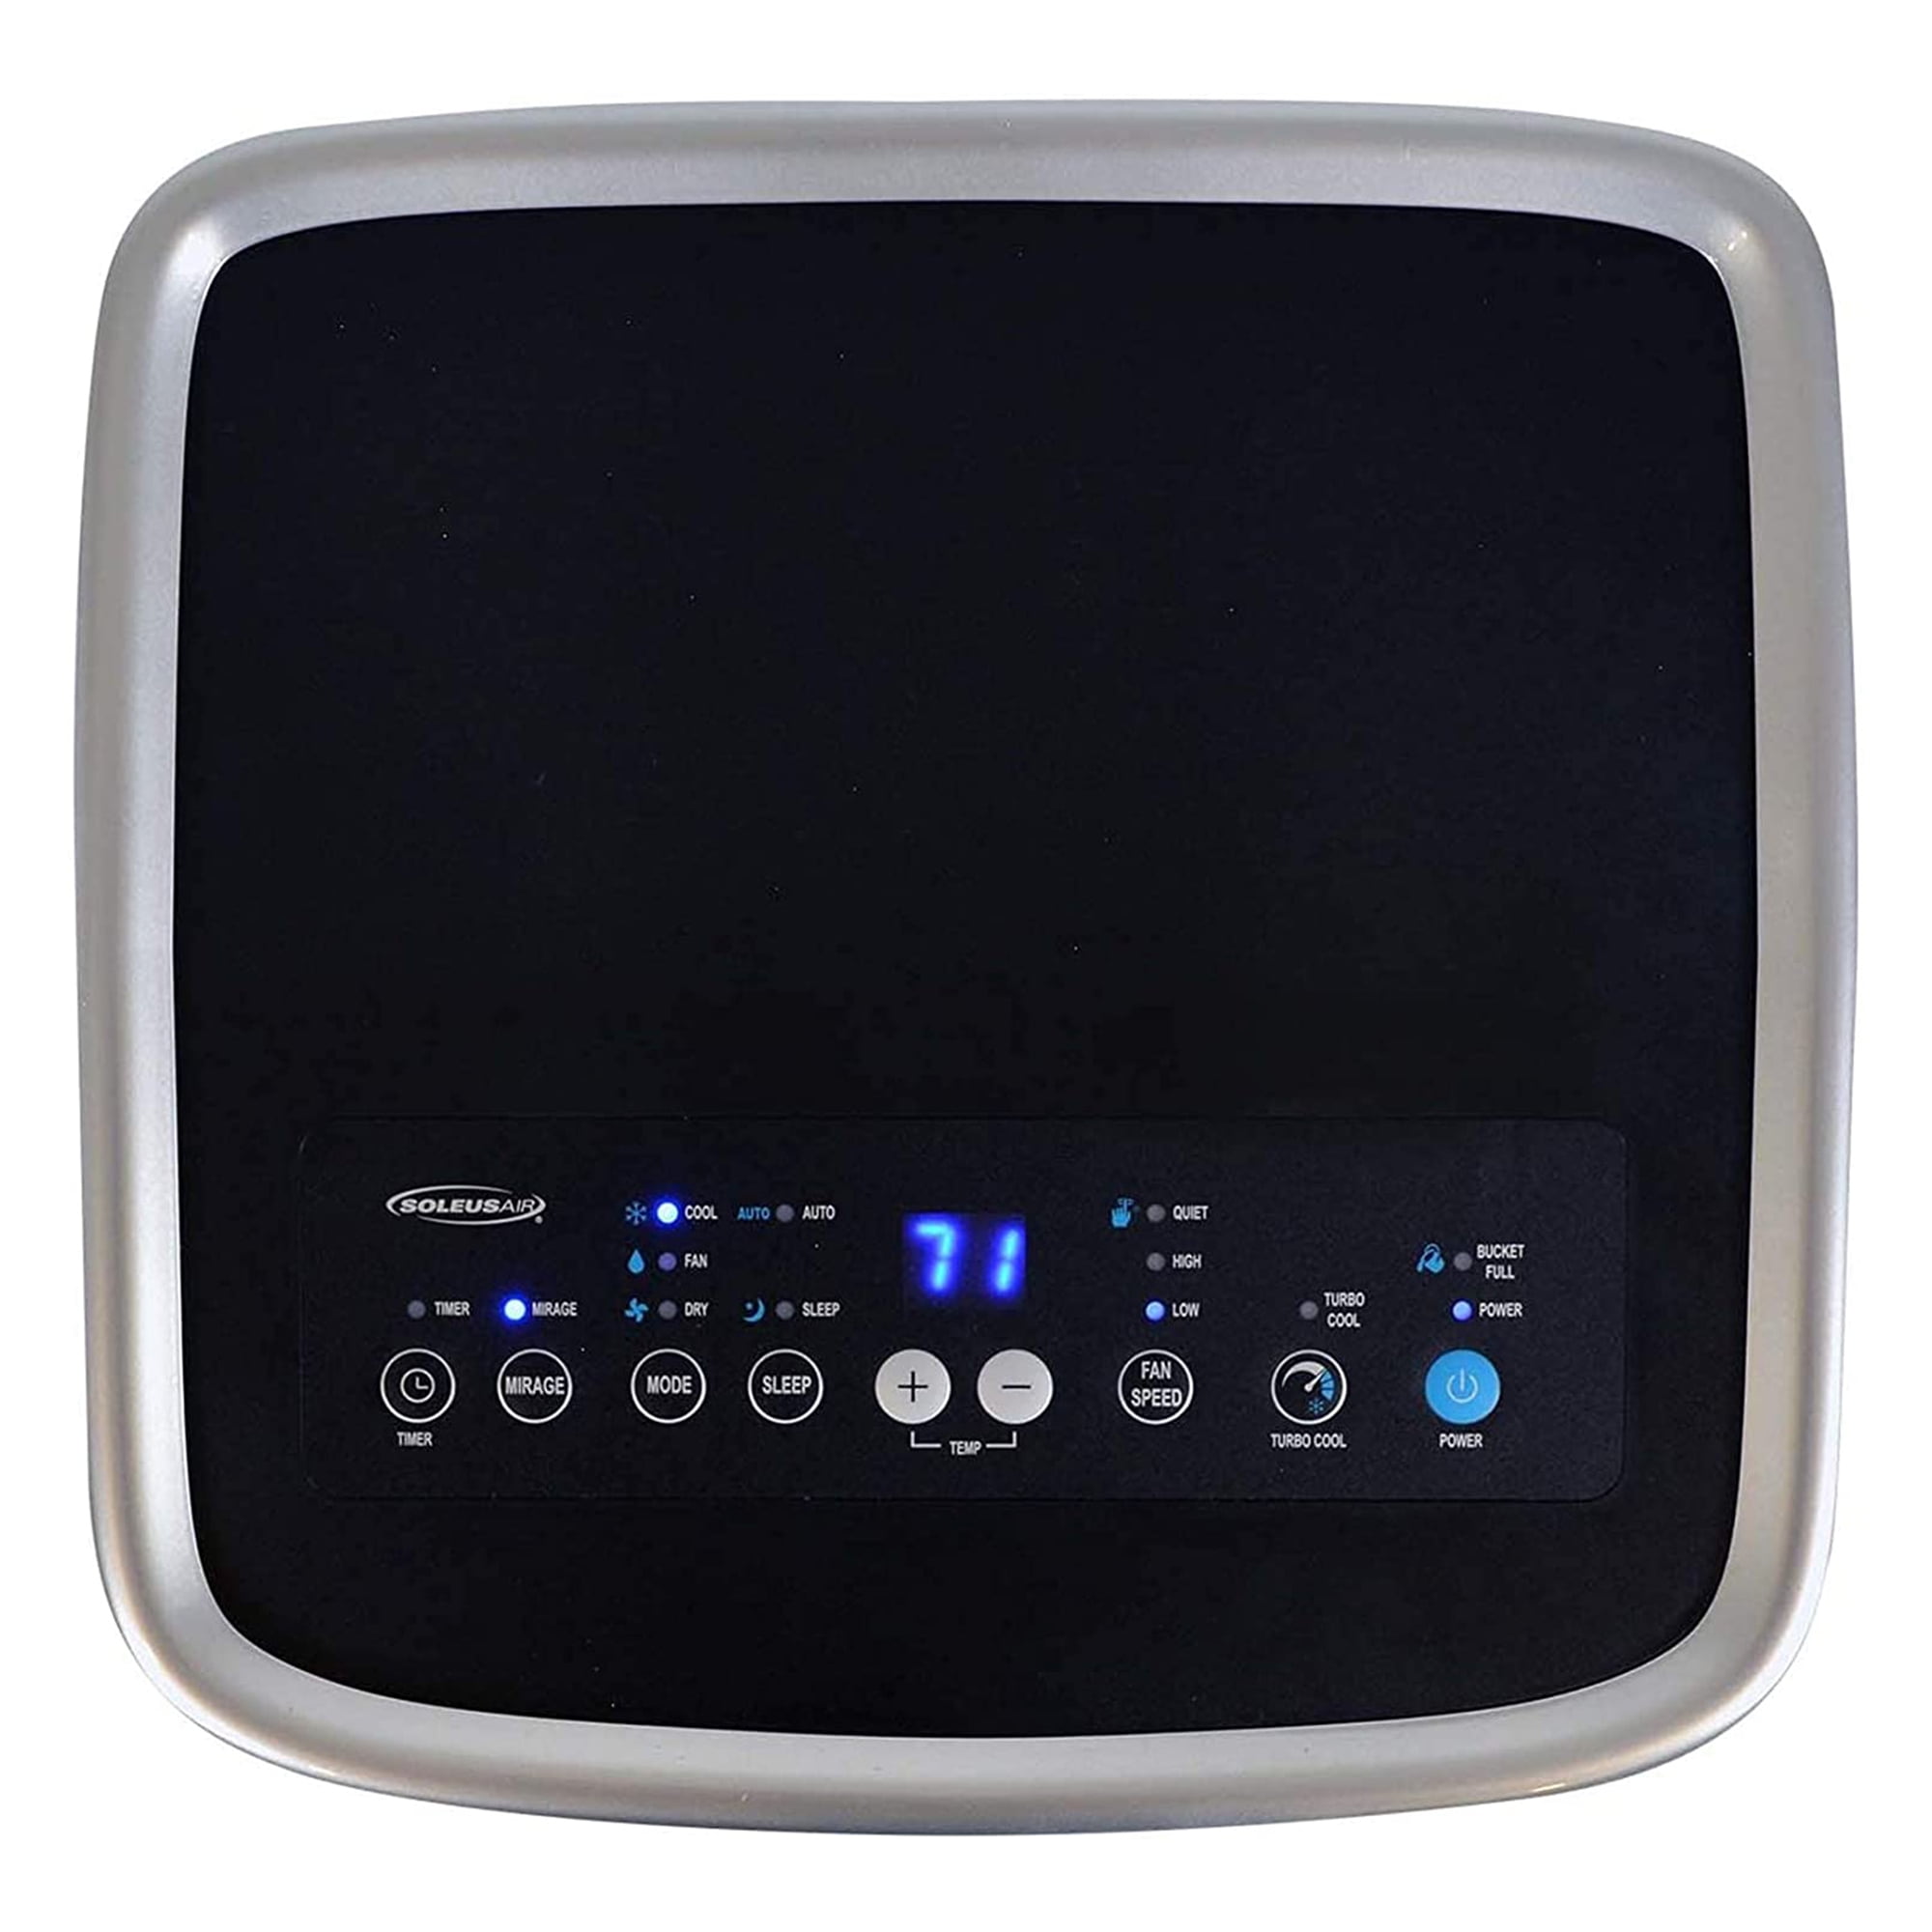 Soleus Air PSH0901 9000 BTU Portable Air Conditioner